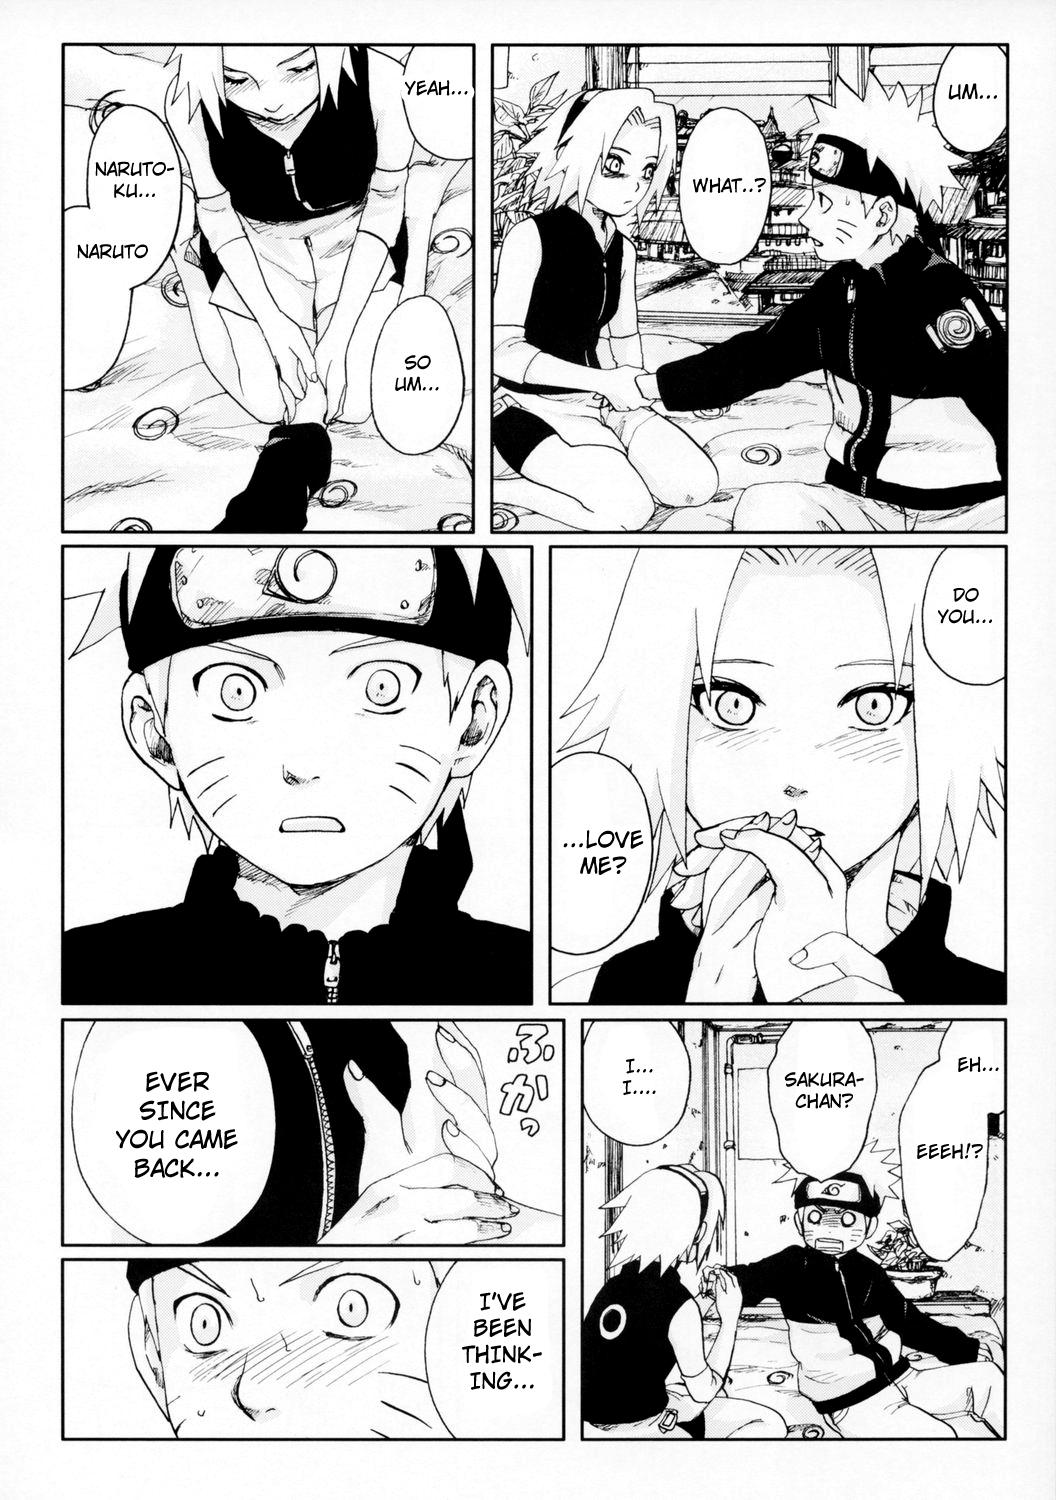 Nut Nisemono - Naruto Ffm - Page 11